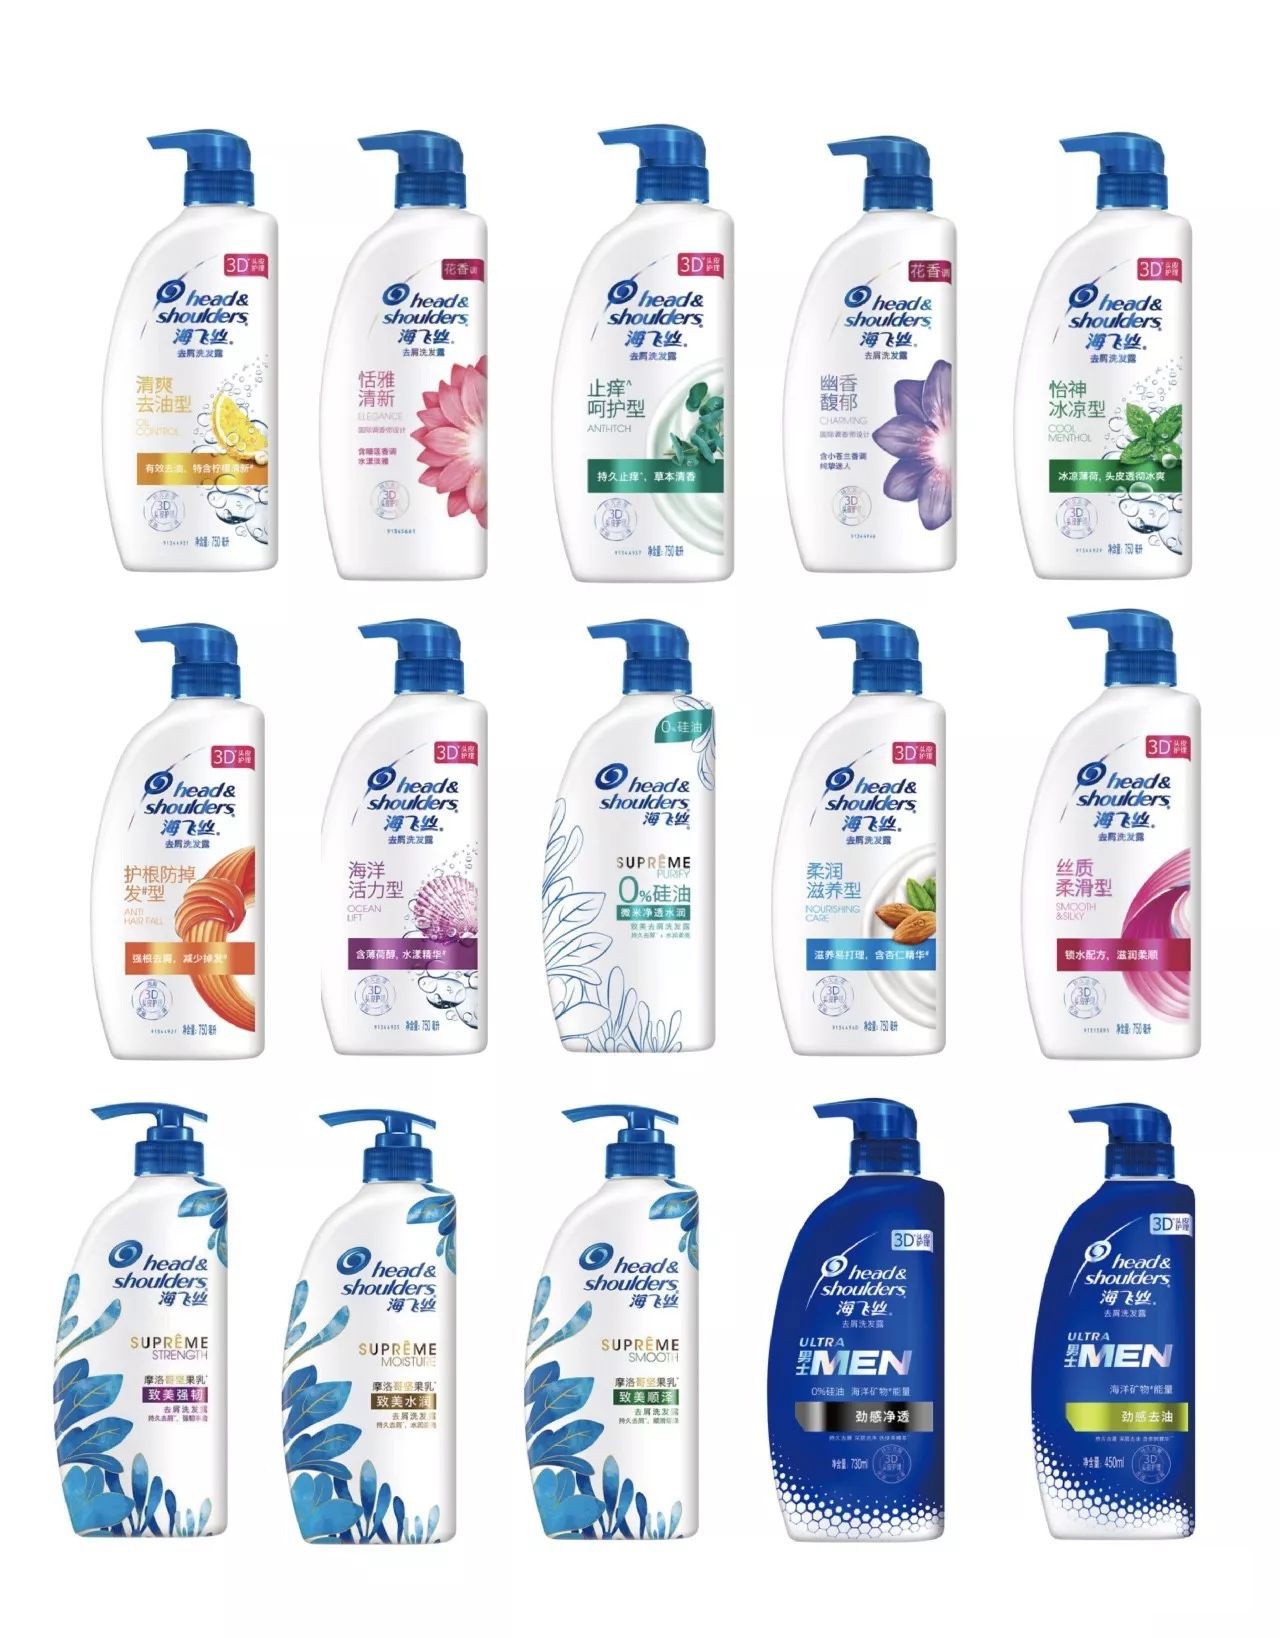 一家公司做了5类不同的洗发水，图啥？